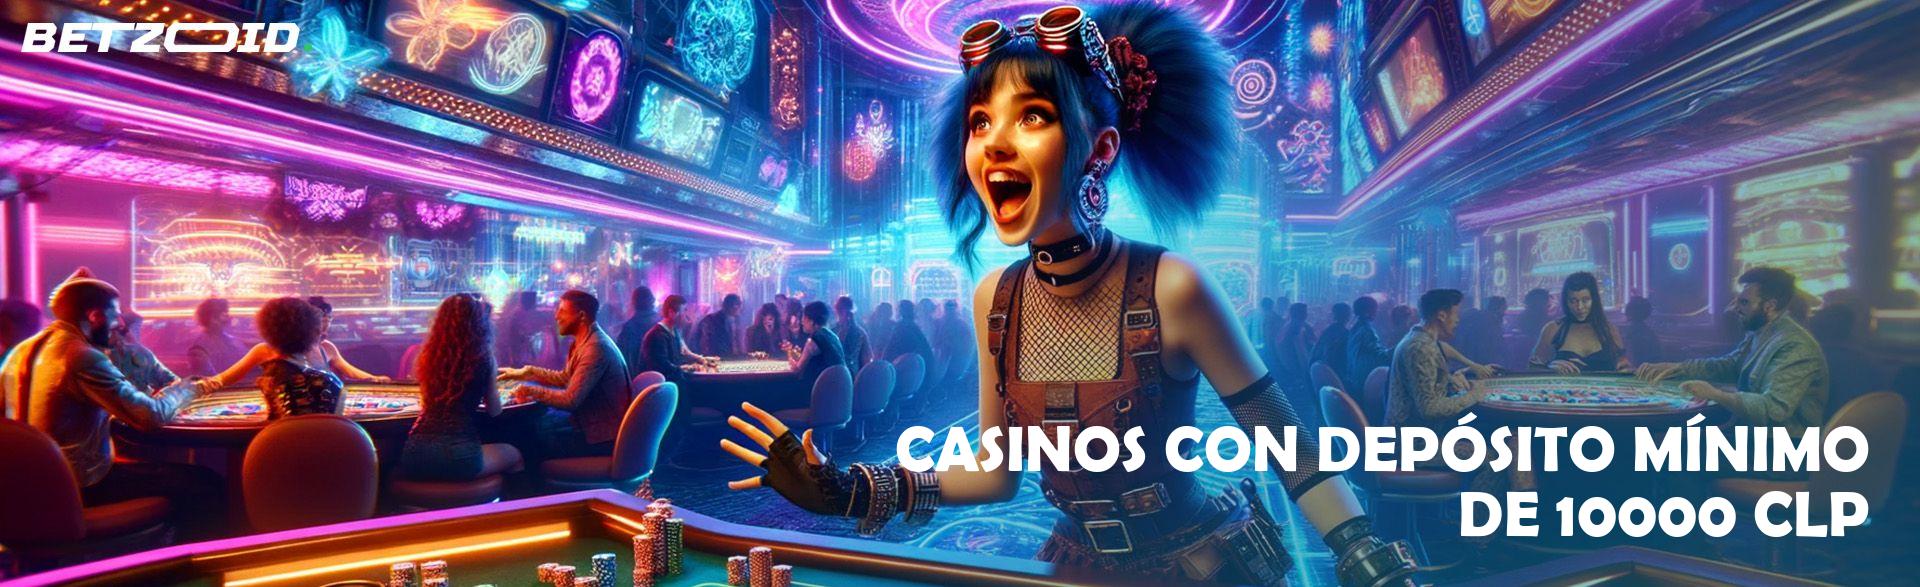 Casinos con Depósito Mínimo de 10000 CLP.